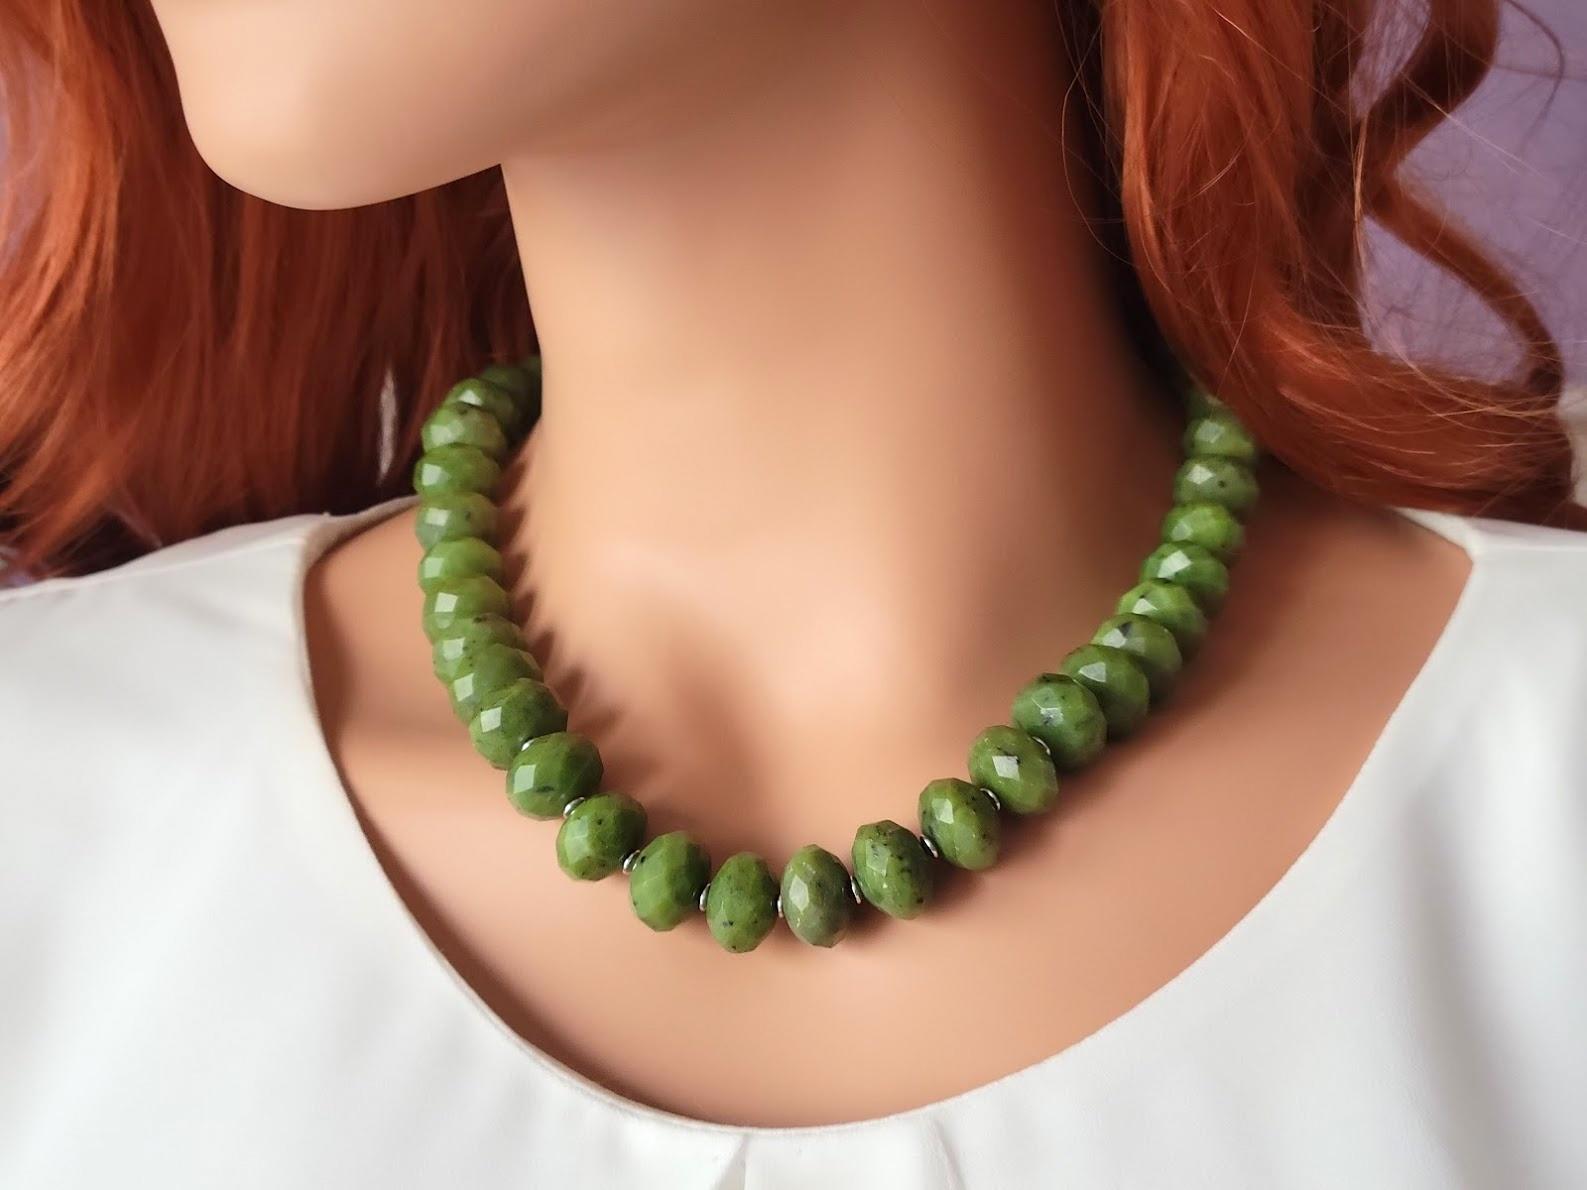 Die Länge der Halskette beträgt 19 Zoll (48 cm). Die Größe der facettierten Rondelle beträgt 15 mm. Die Nephritperlen sind von ausgezeichneter Qualität.
Nephrit-Perlen sind nicht lichtdurchlässig.
Die Farbe der Perlen ist ein schönes Grün. Der Glanz